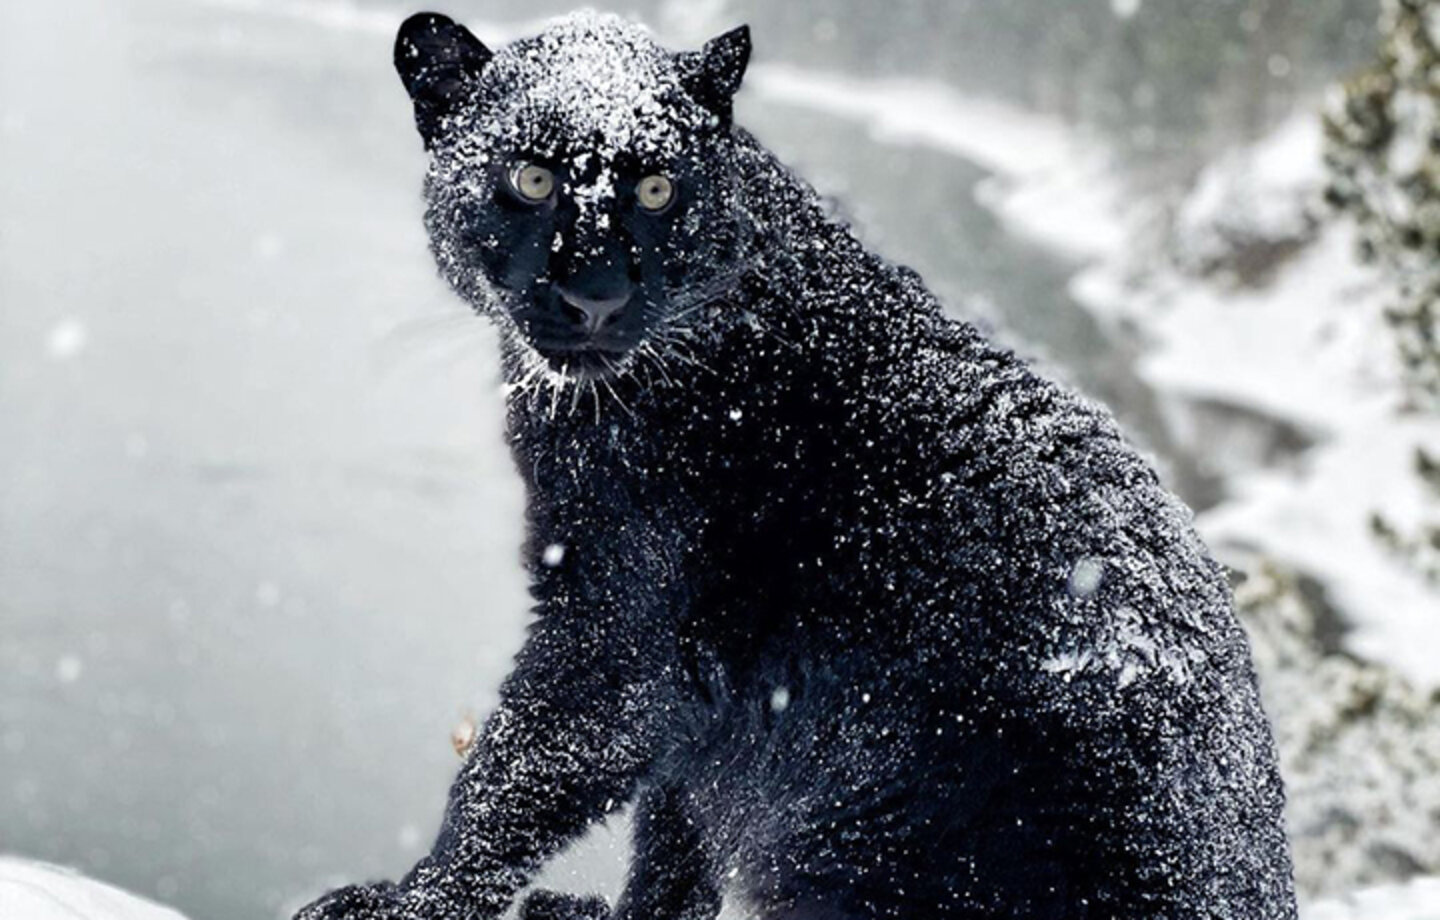 Impresionantes imágenes de una pantera negra jugando por los bosques nevados de Siberia